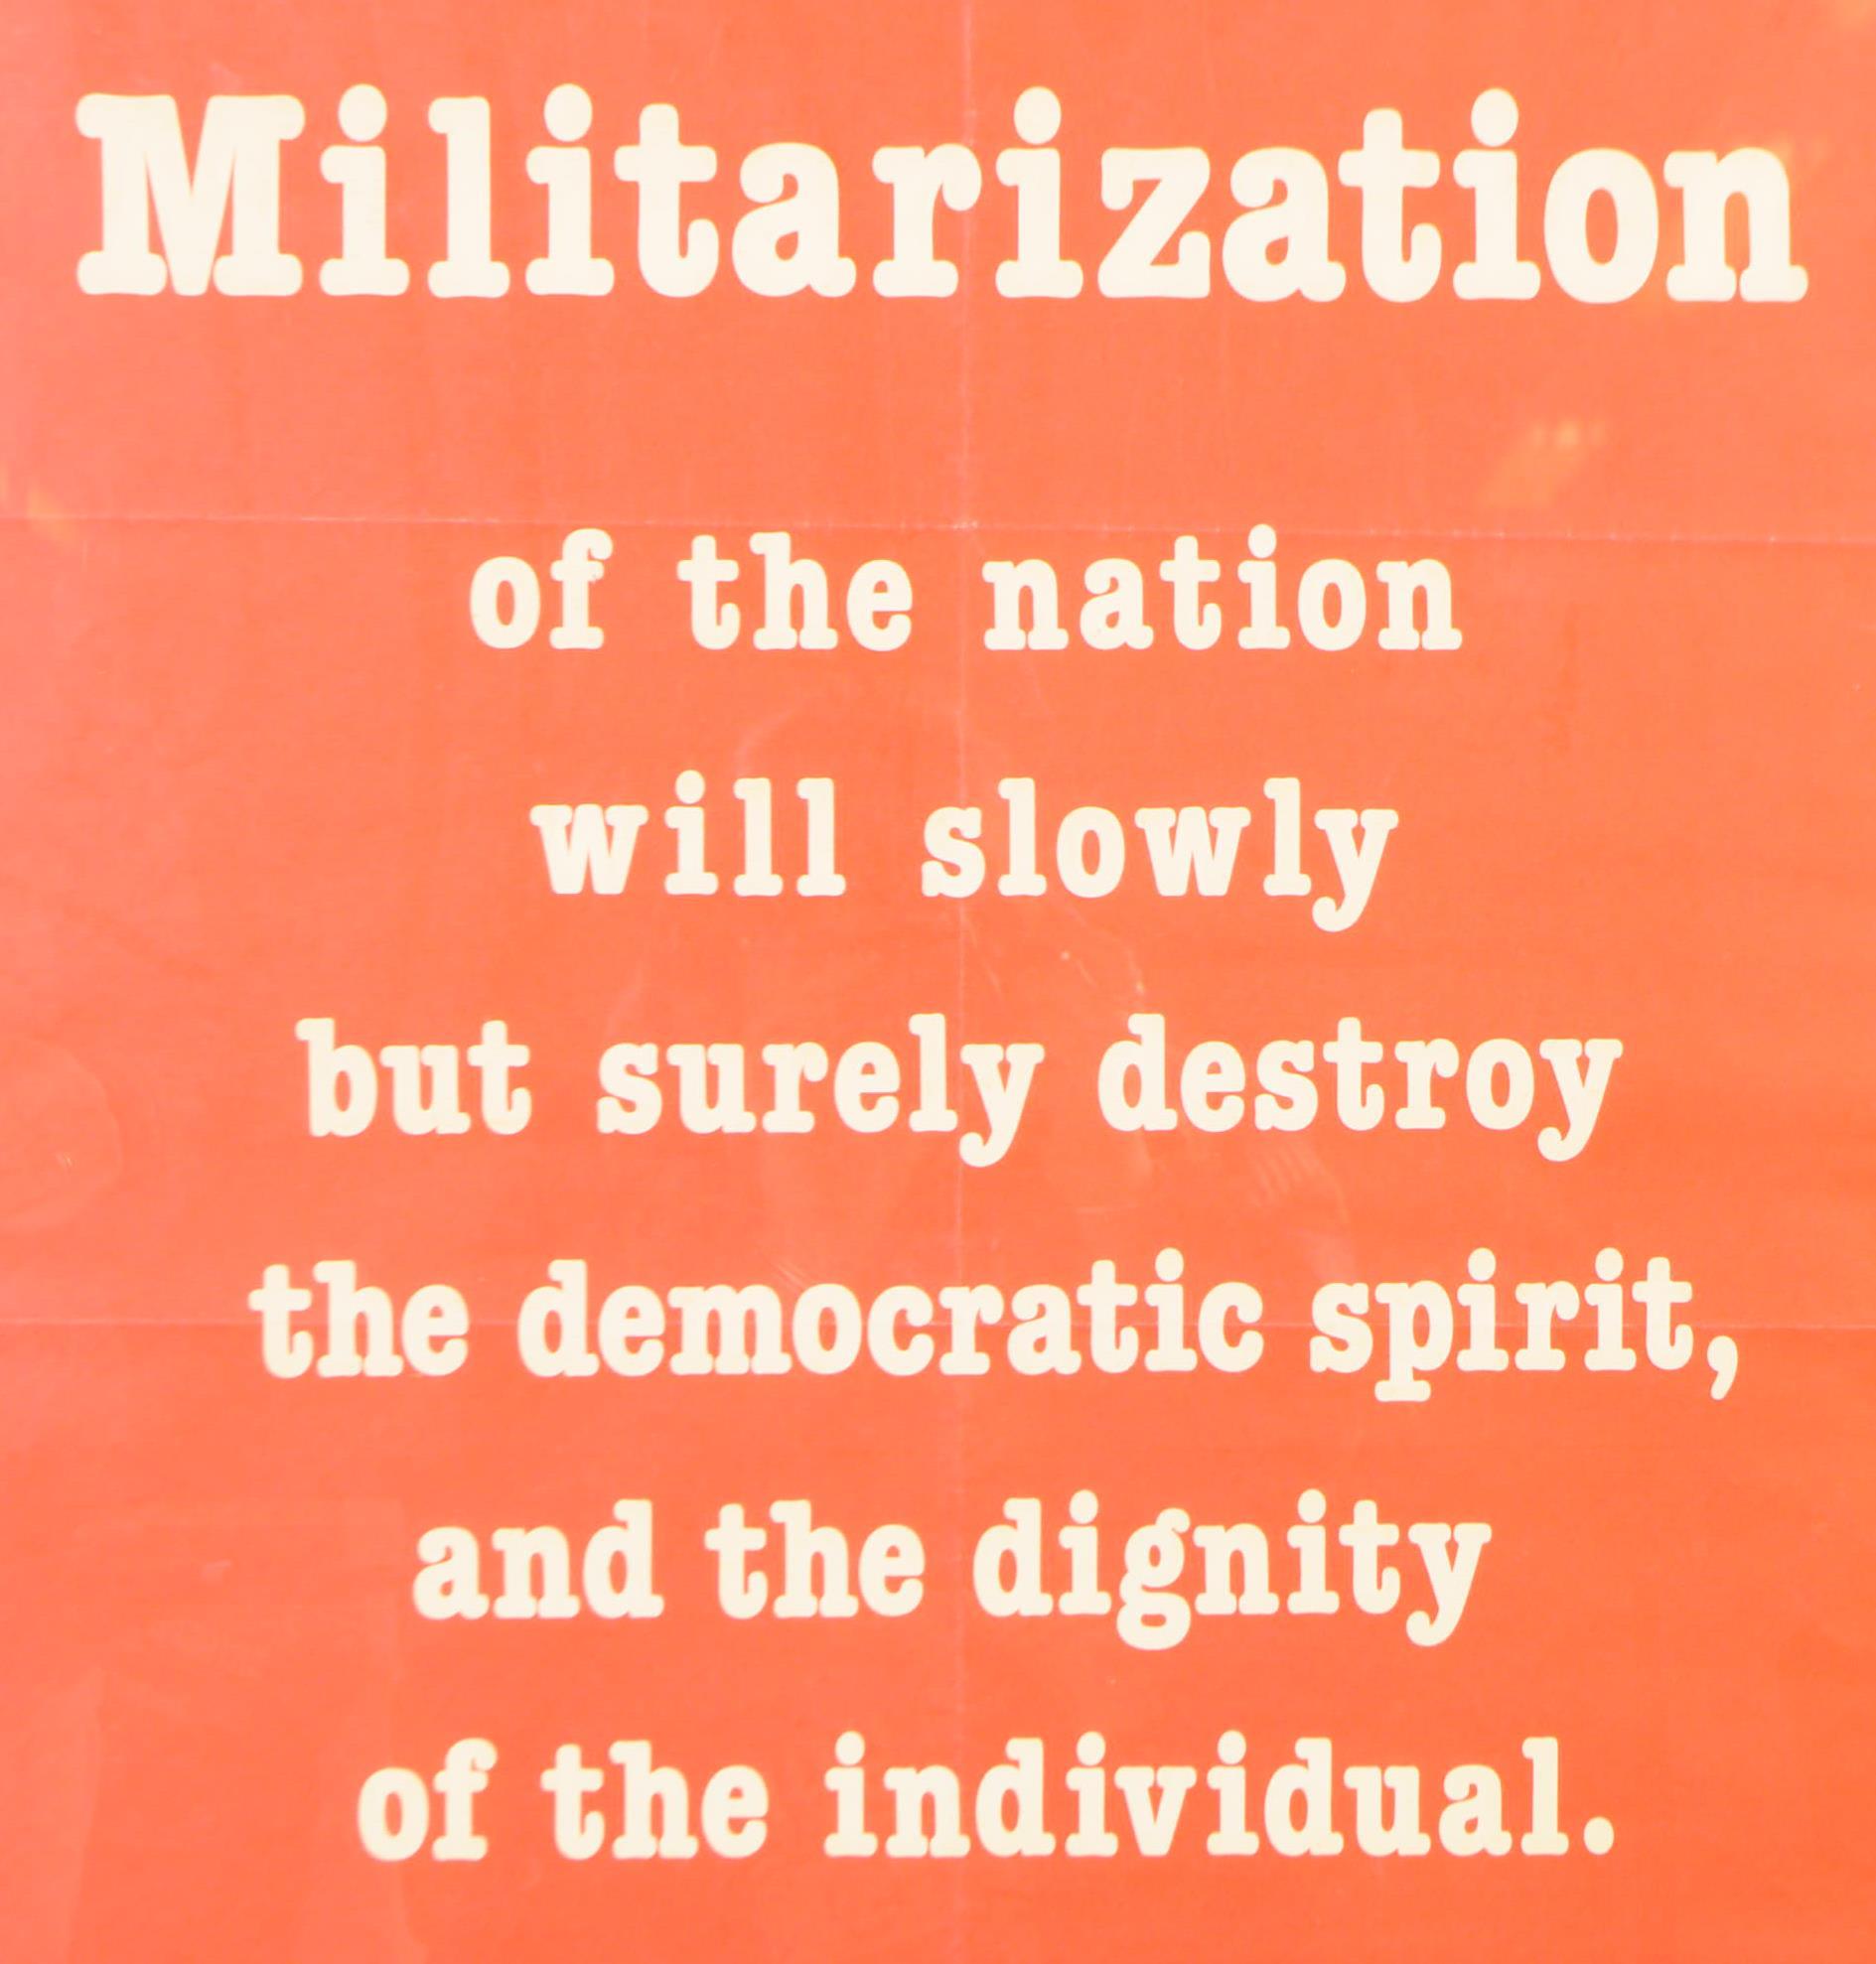 20TH CENTURY ALBERT EINSTEIN MILITARIZATION QUOTE POSTER - Image 3 of 5